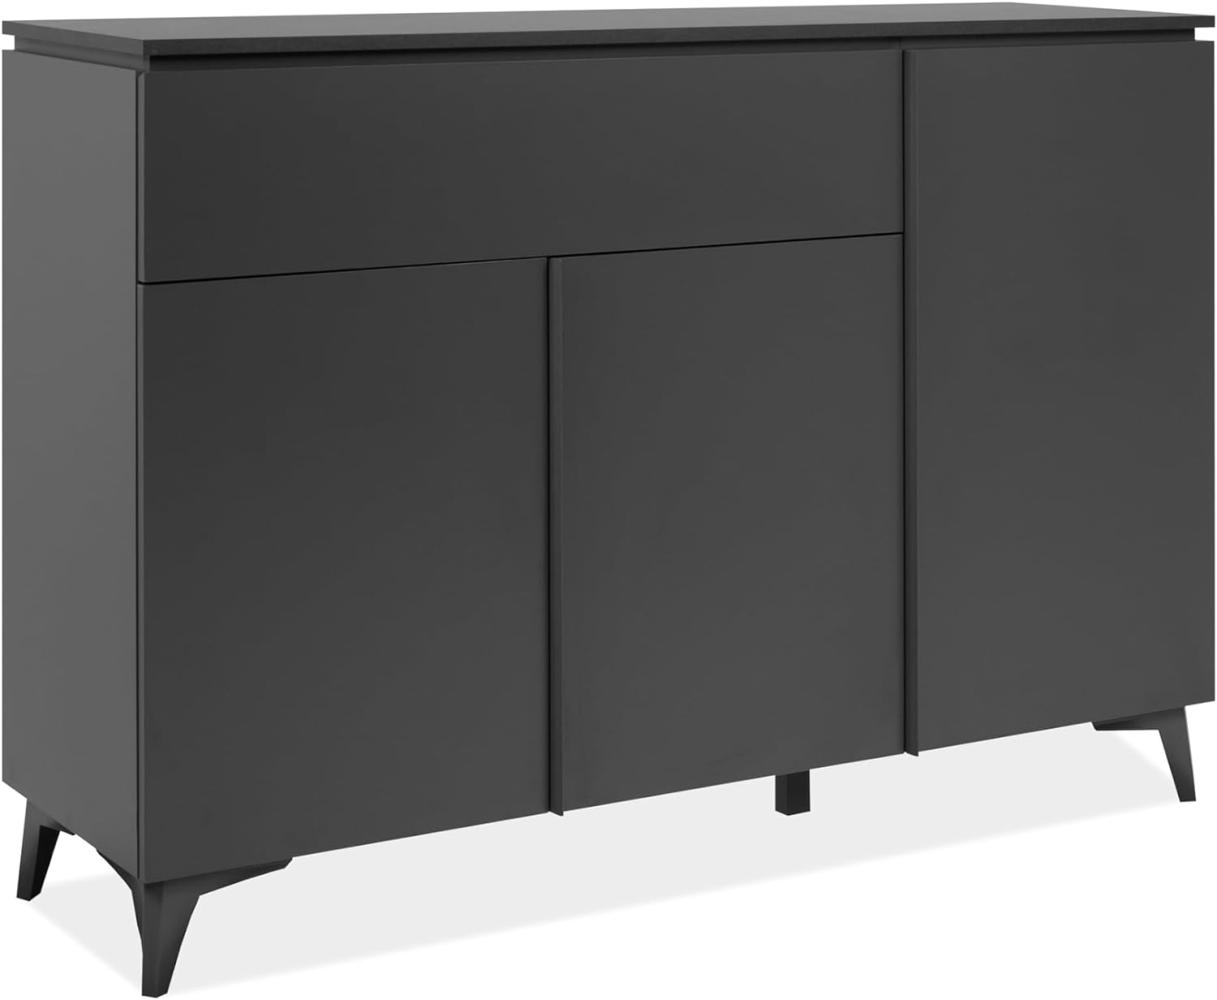 Sideboard Bertrix in grau und Schiefer 133 x 92 cm Bild 1